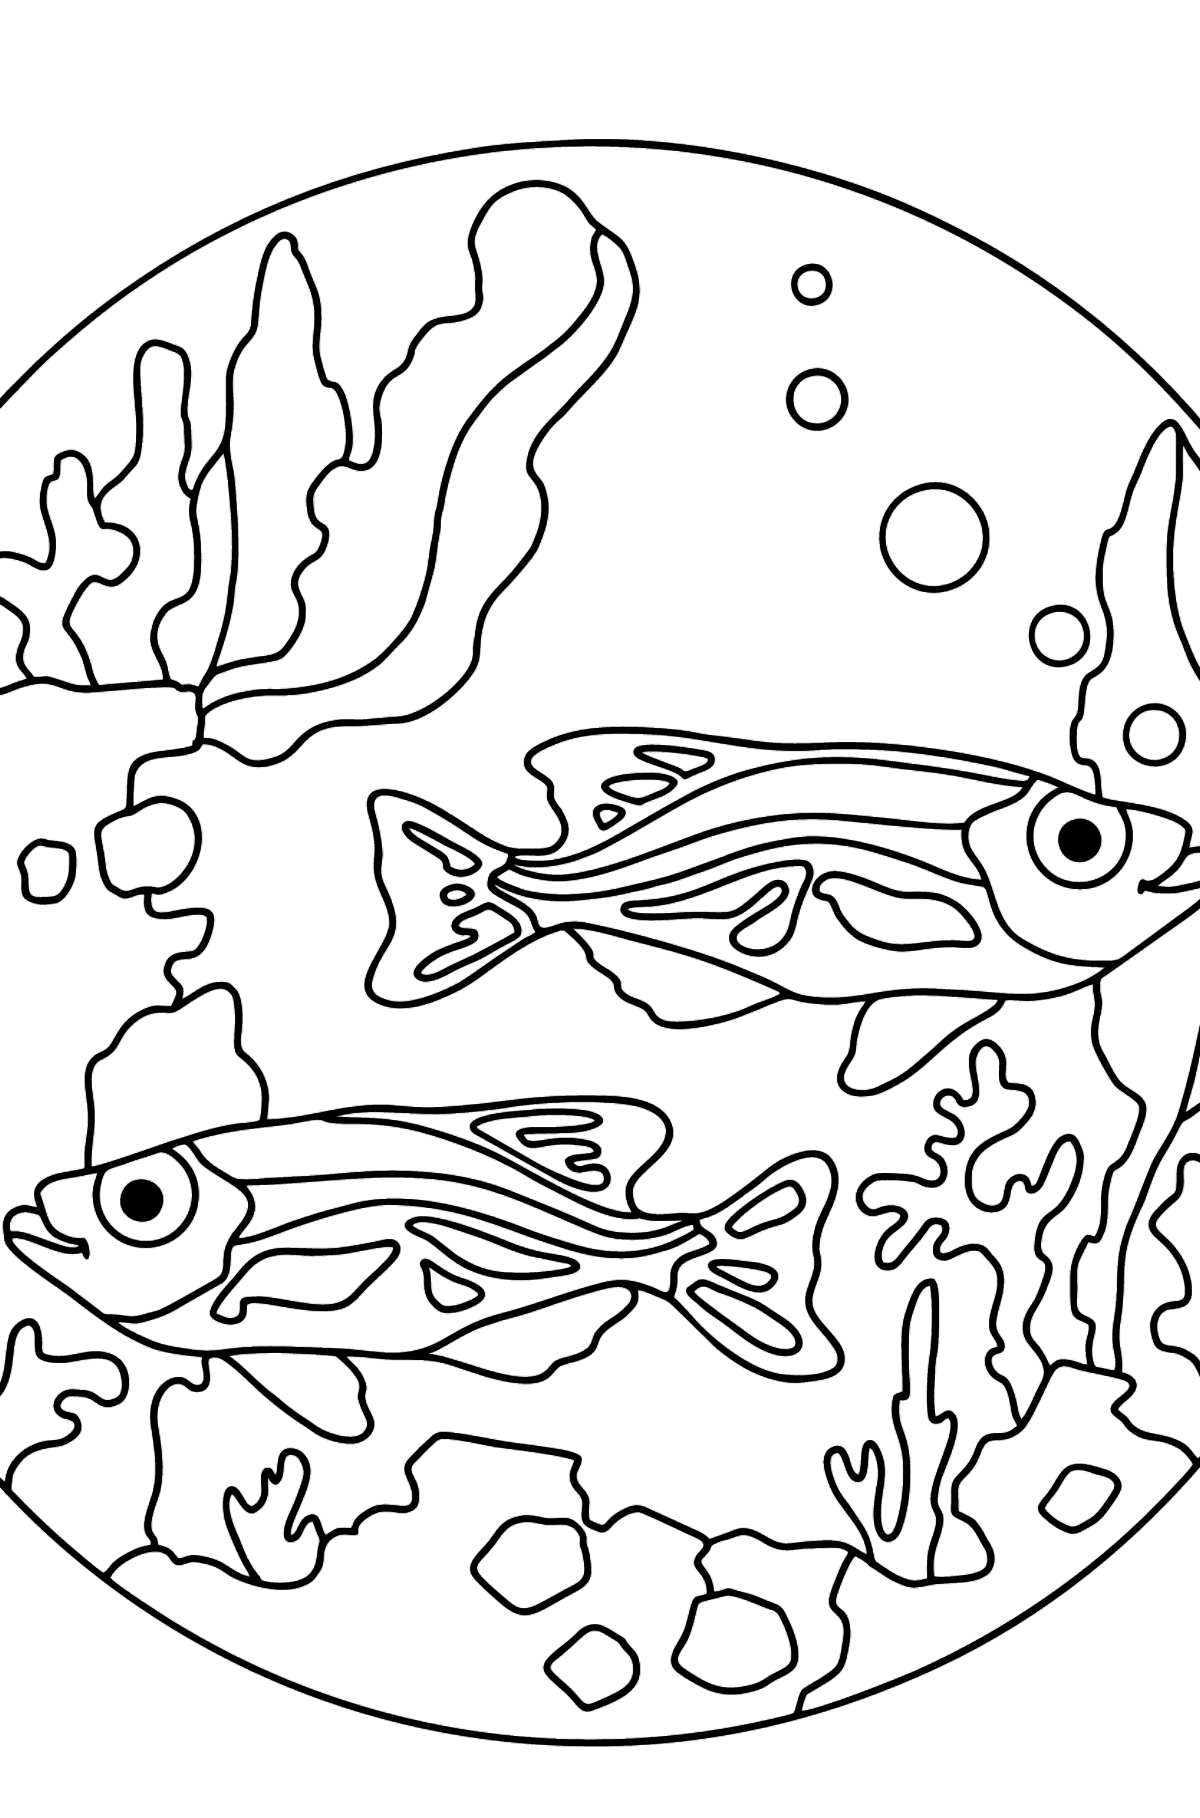 Dibujo para Colorear - Los Peces están Nadando Juntos Pacíficamente - Dibujos para Colorear para Niños